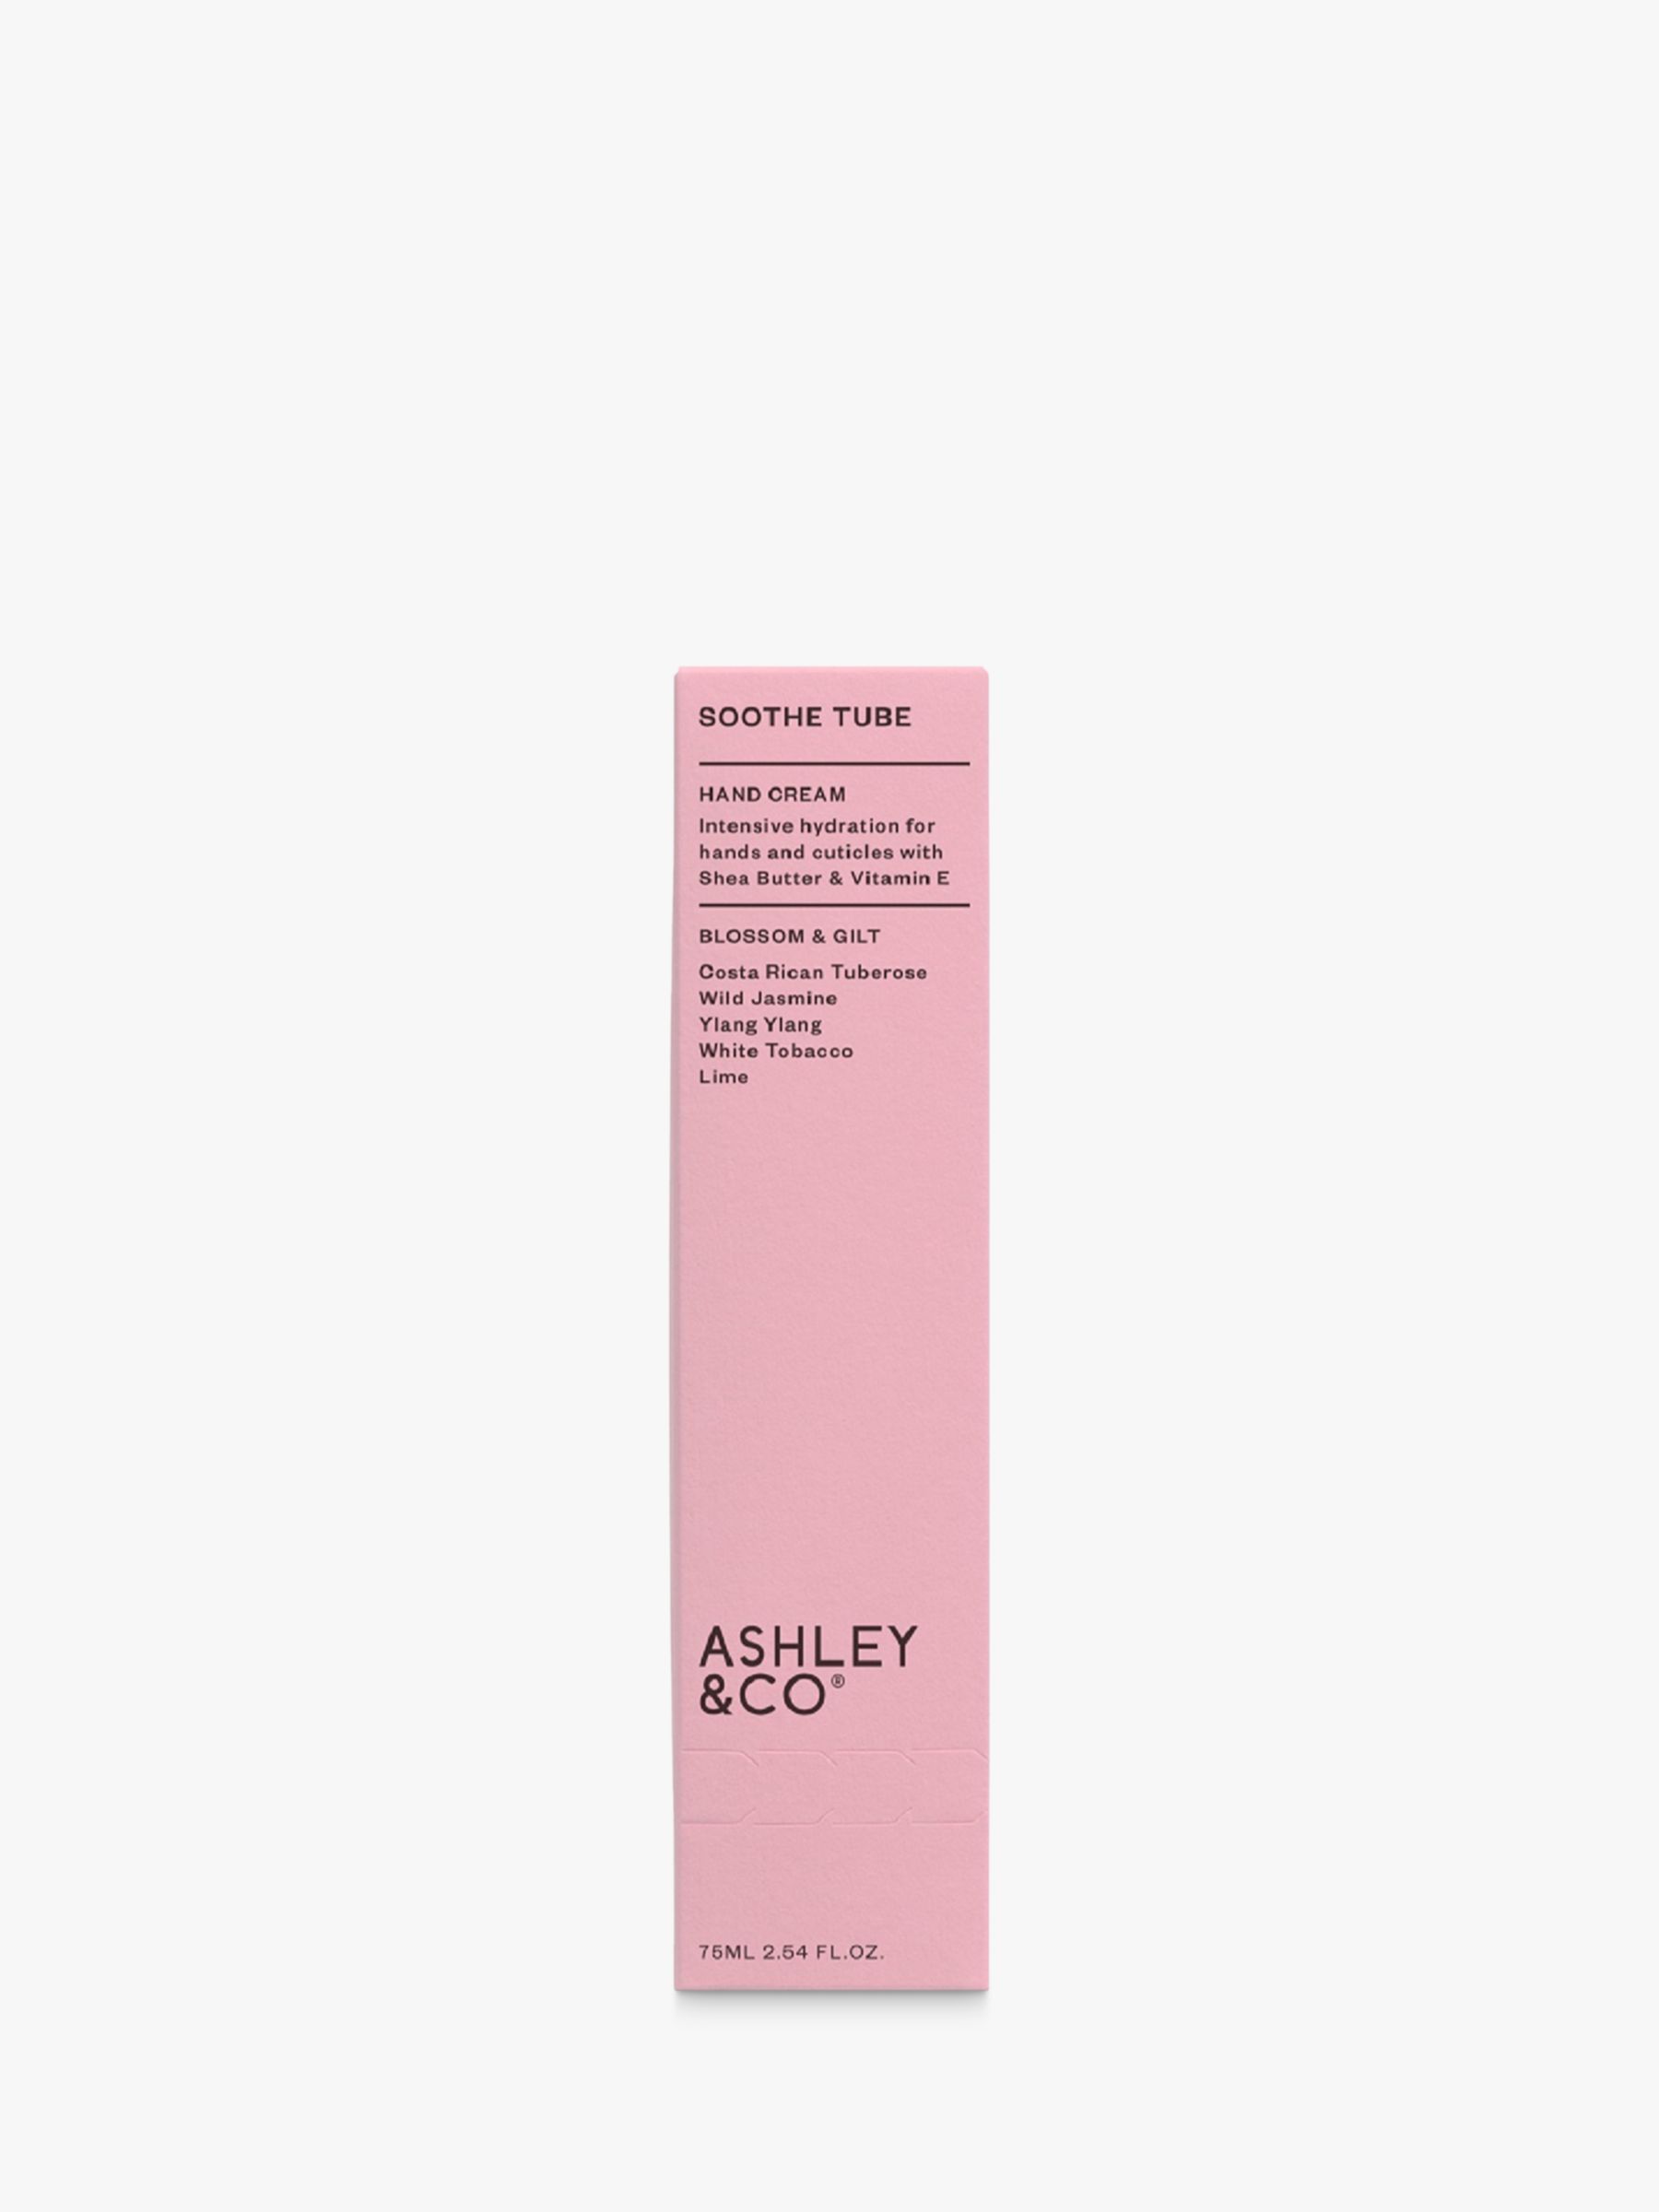 Ashley & Co Blossom & Gilt Soothe Tube Hand Cream, 75ml